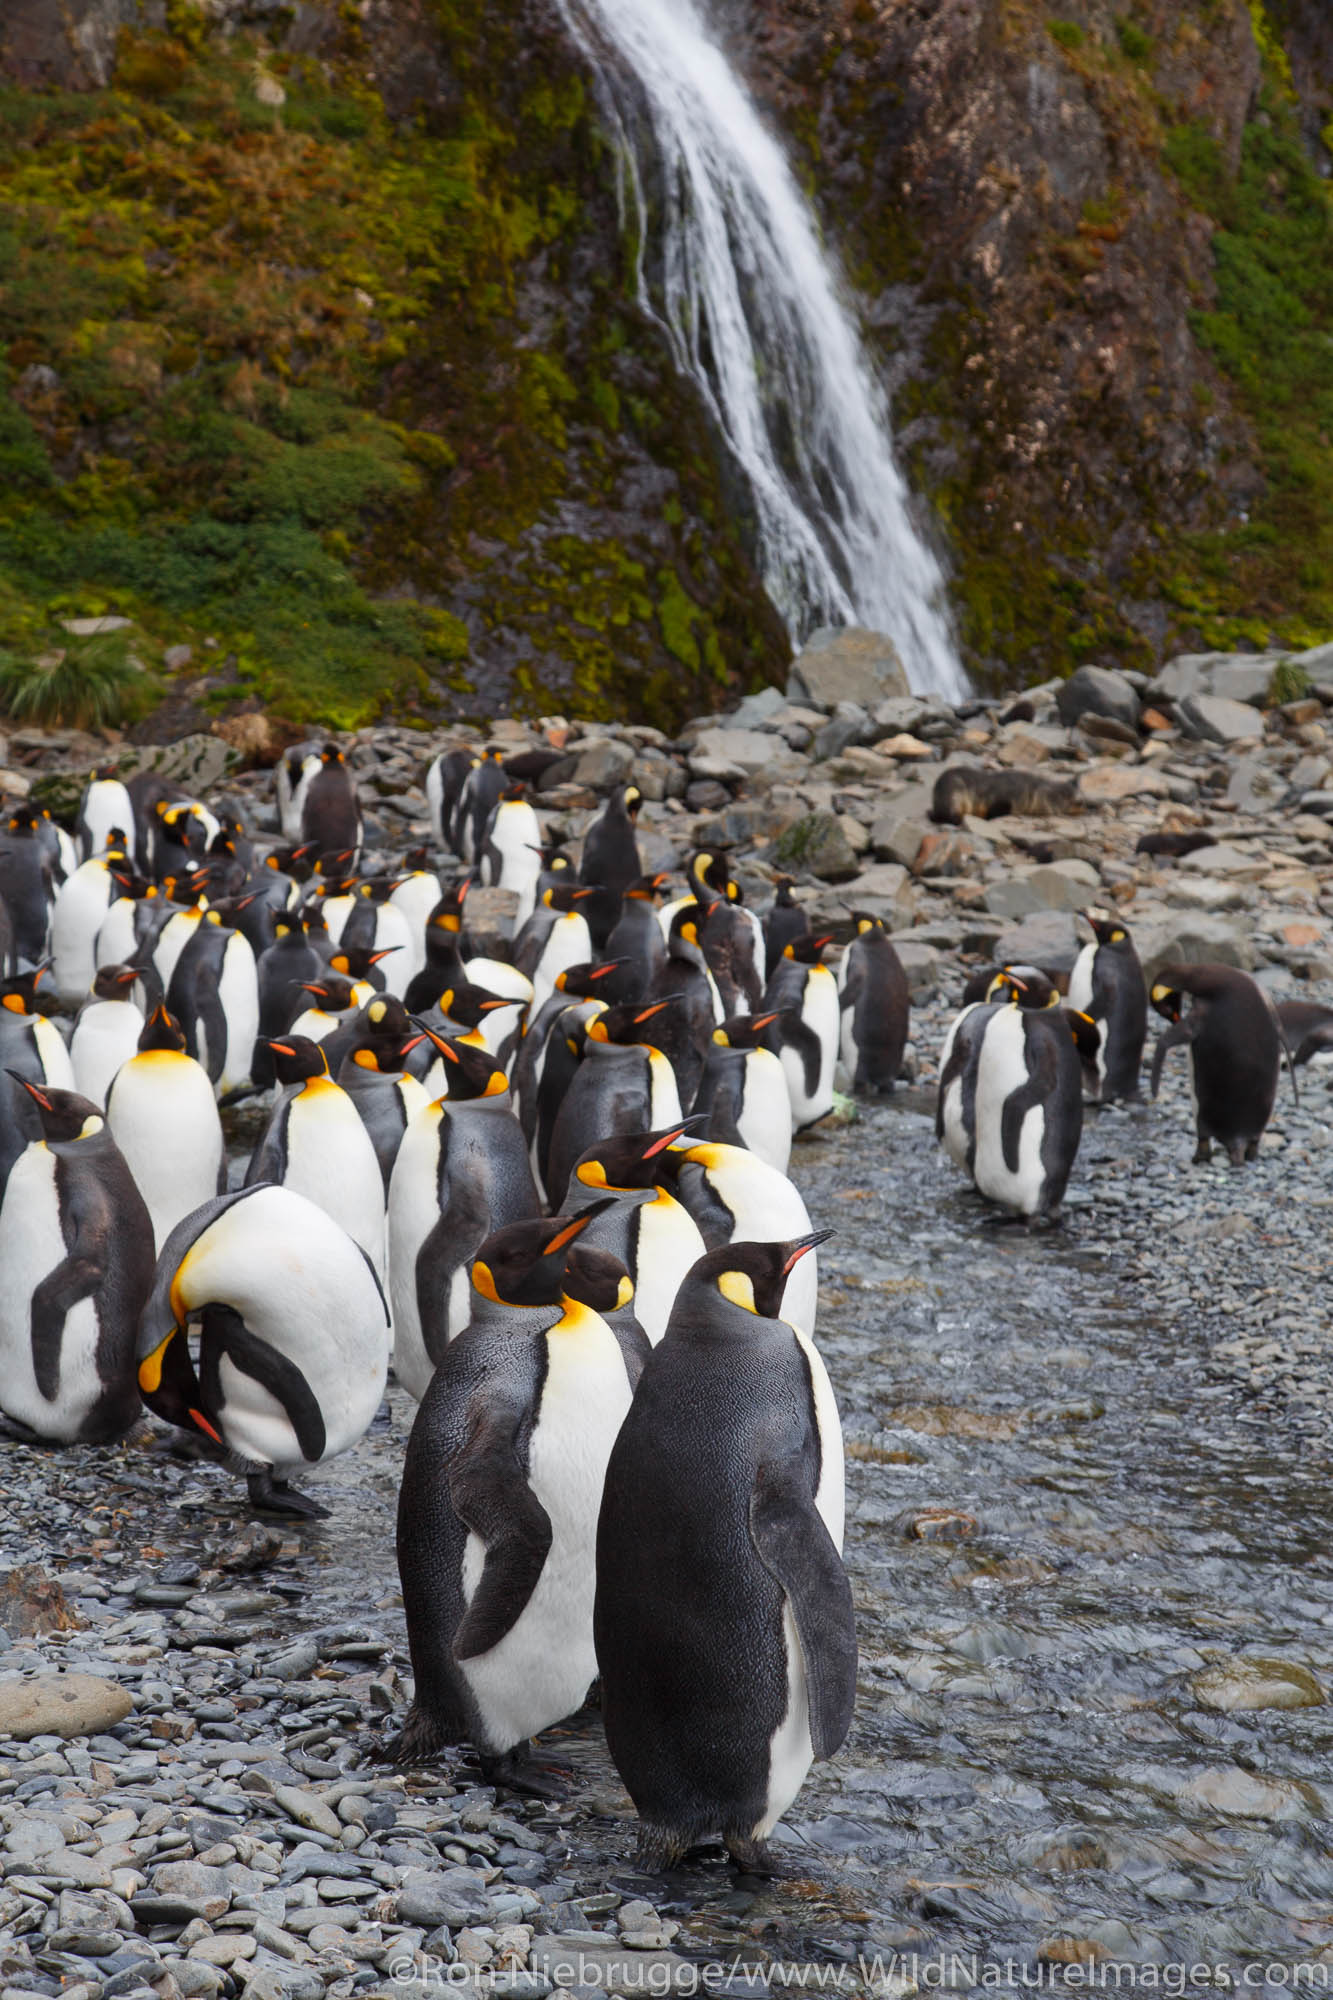 King penguins (Aptenodytes patagonicus), Hercules Bay, South Georgia, Antarctica.